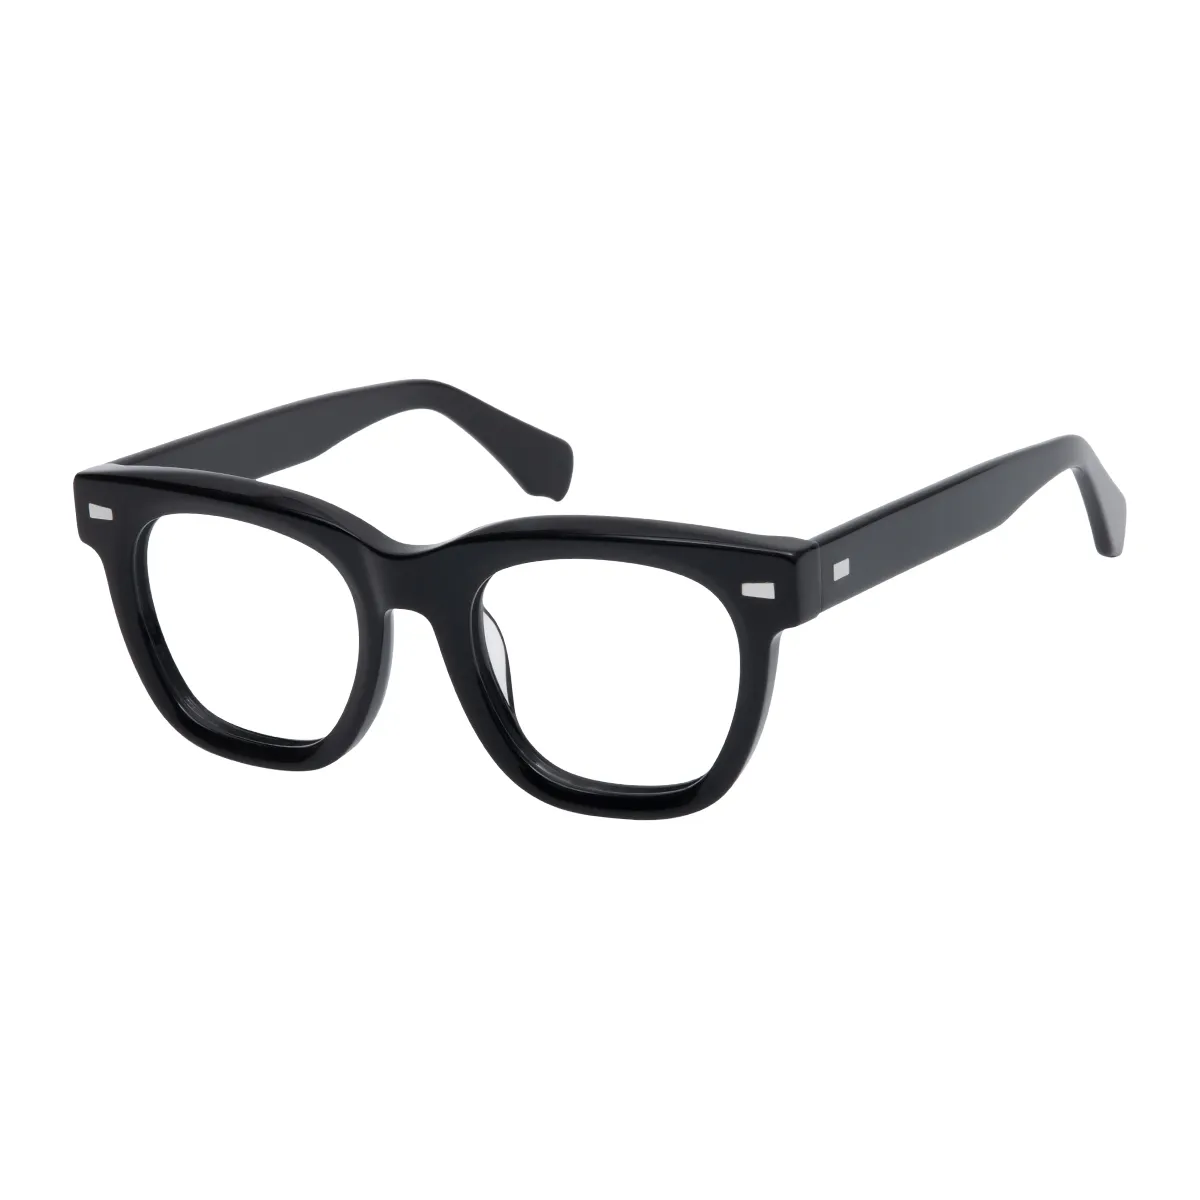 Morty - Square Black Glasses for Men & Women